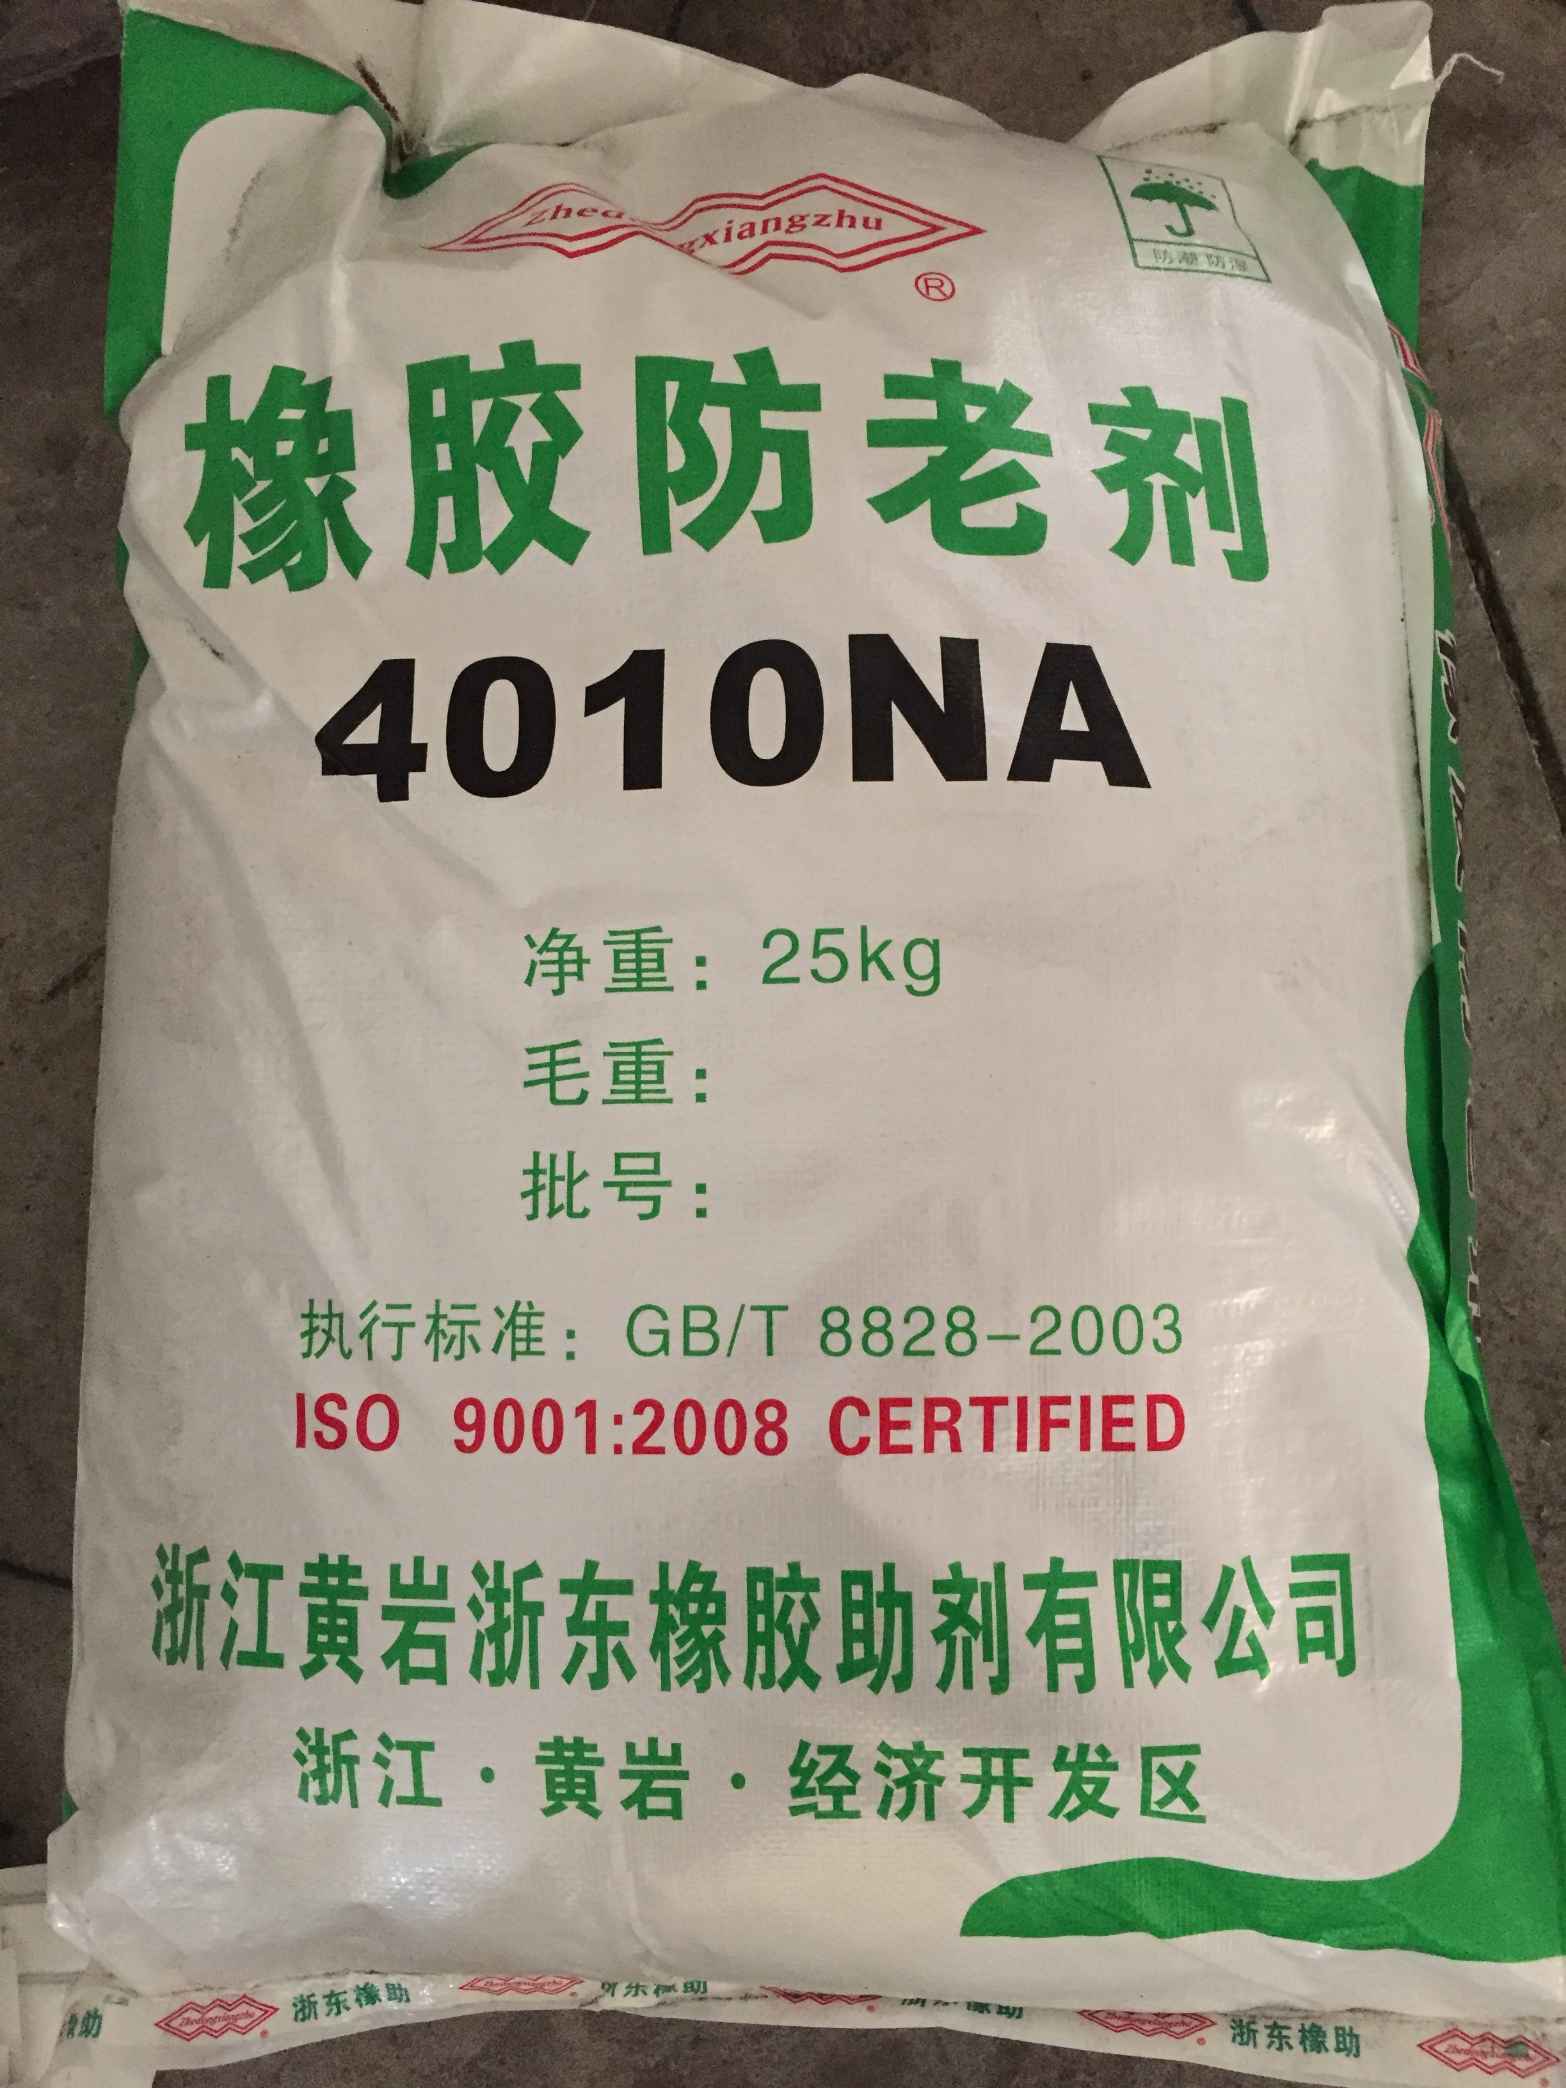 黄岩浙东 橡胶硫化促进 4010NA 30年品质